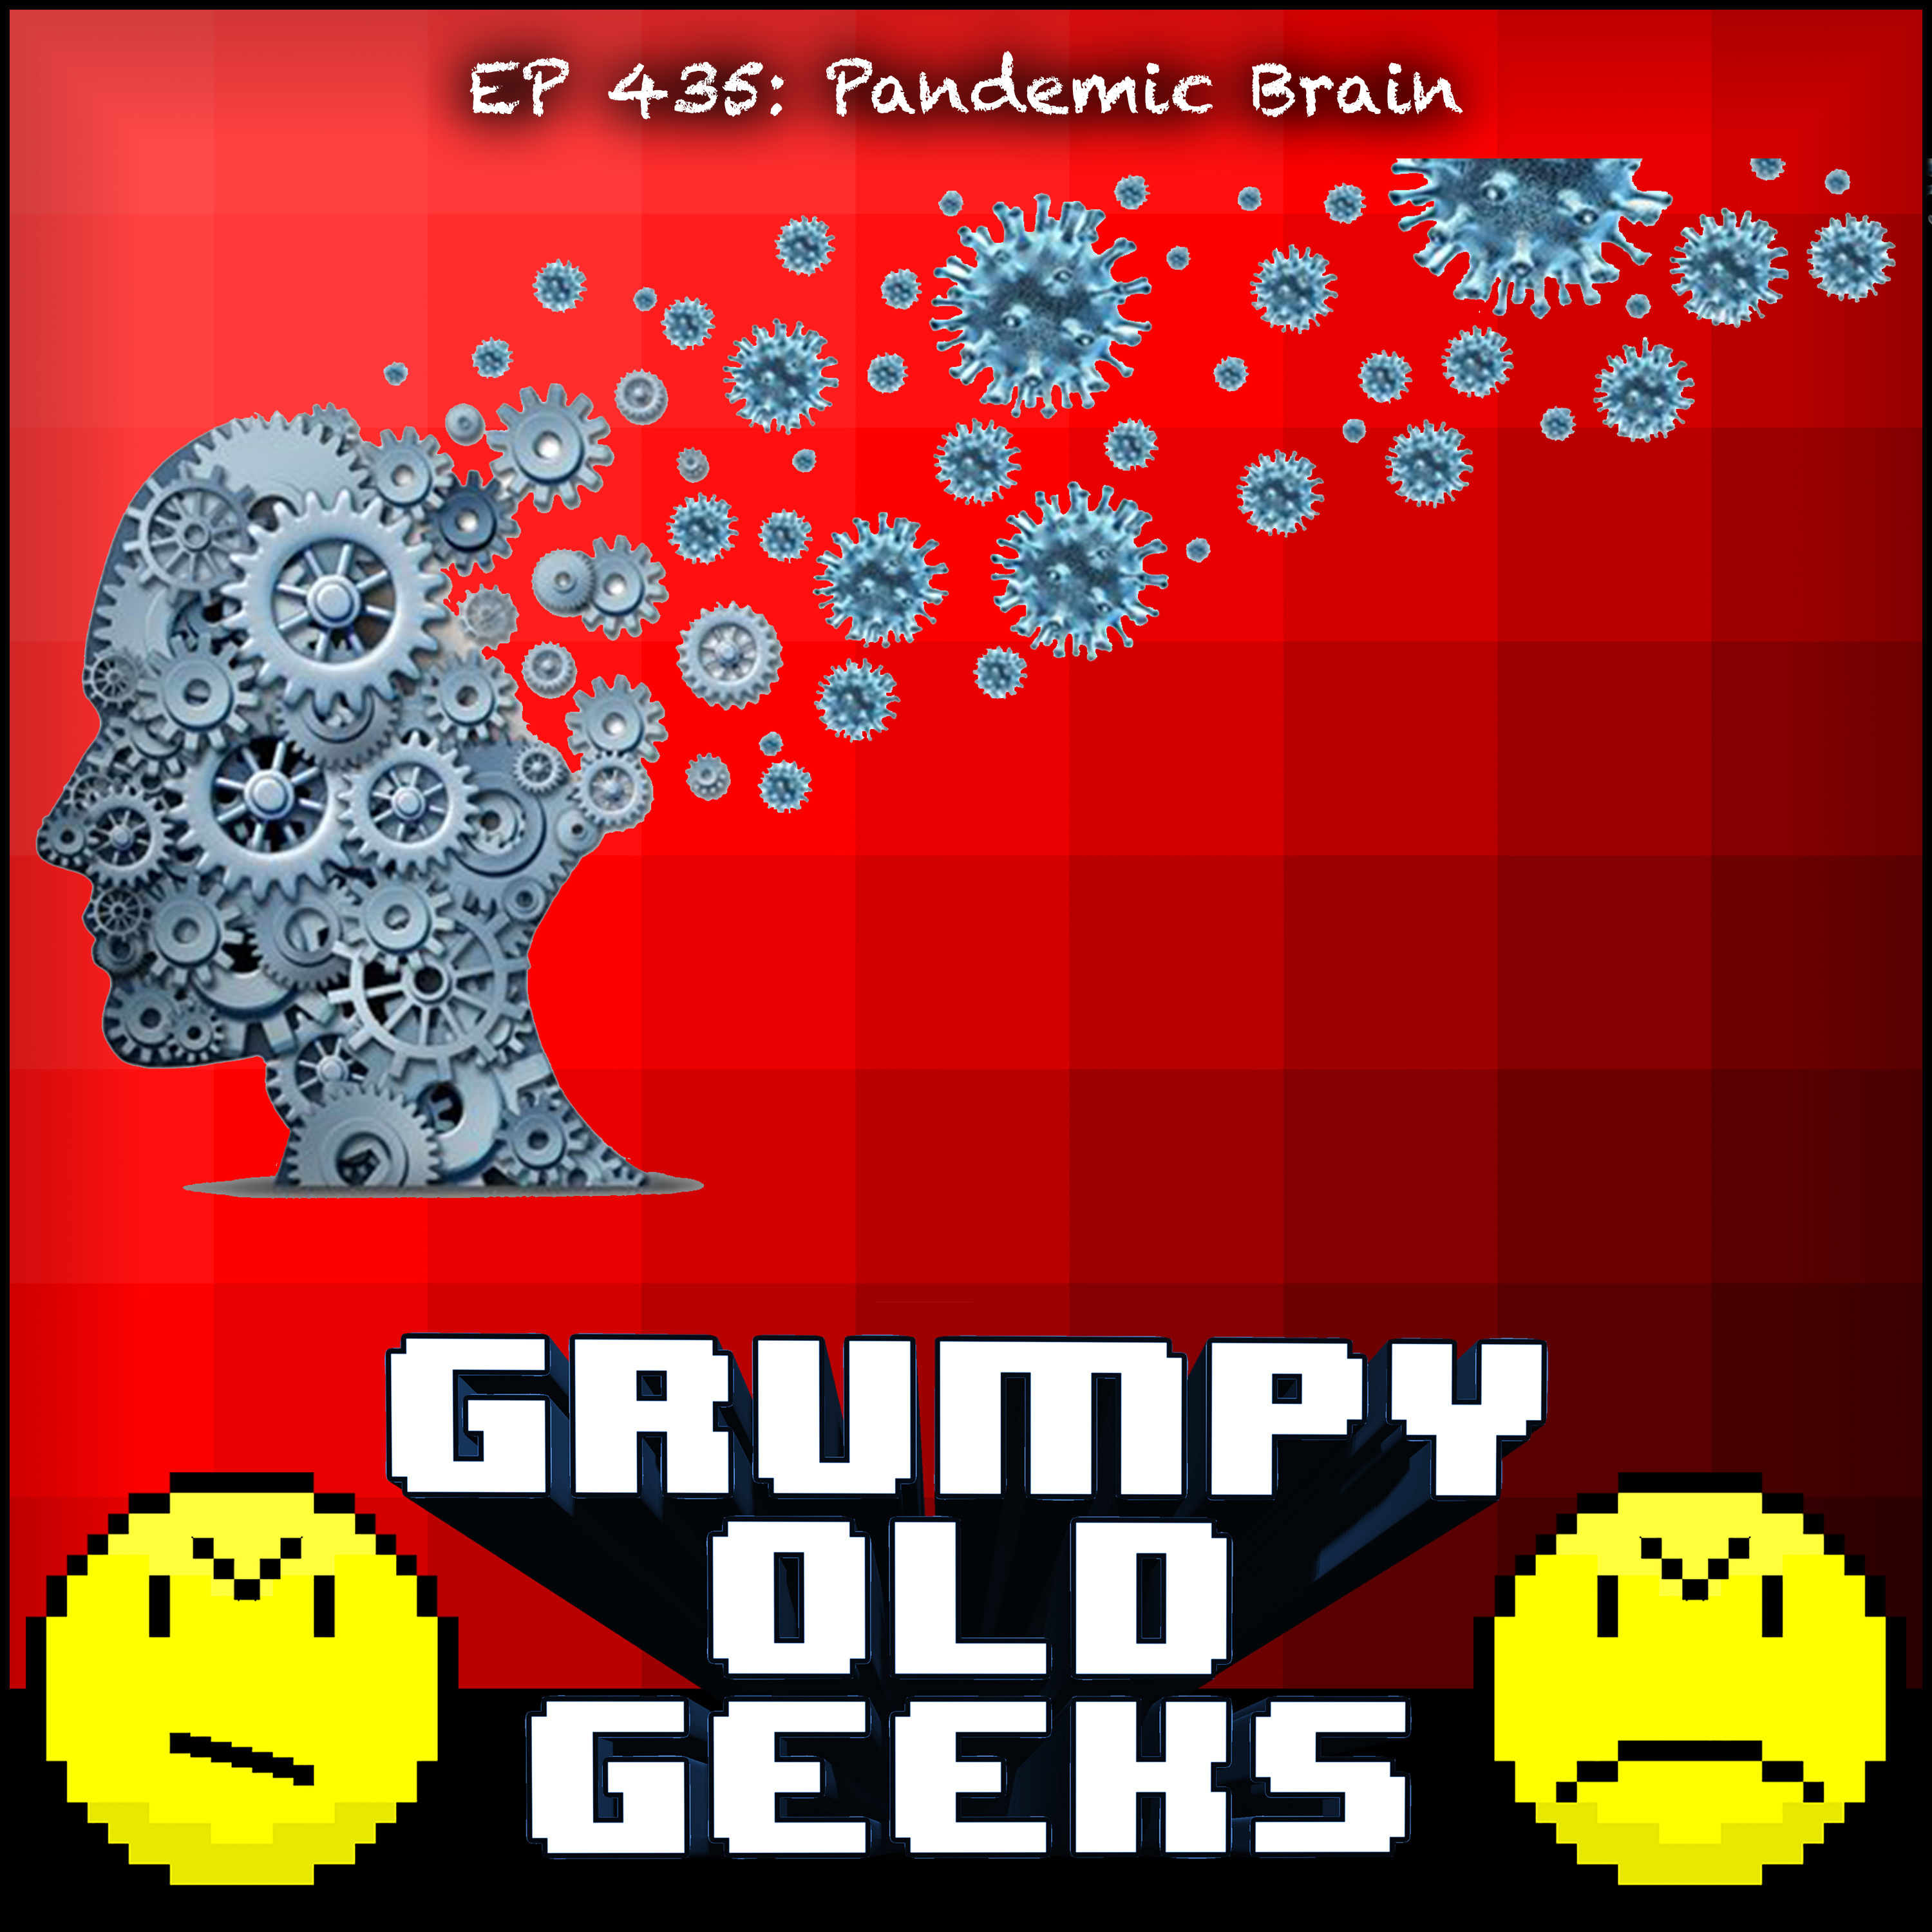 435: Pandemic Brain